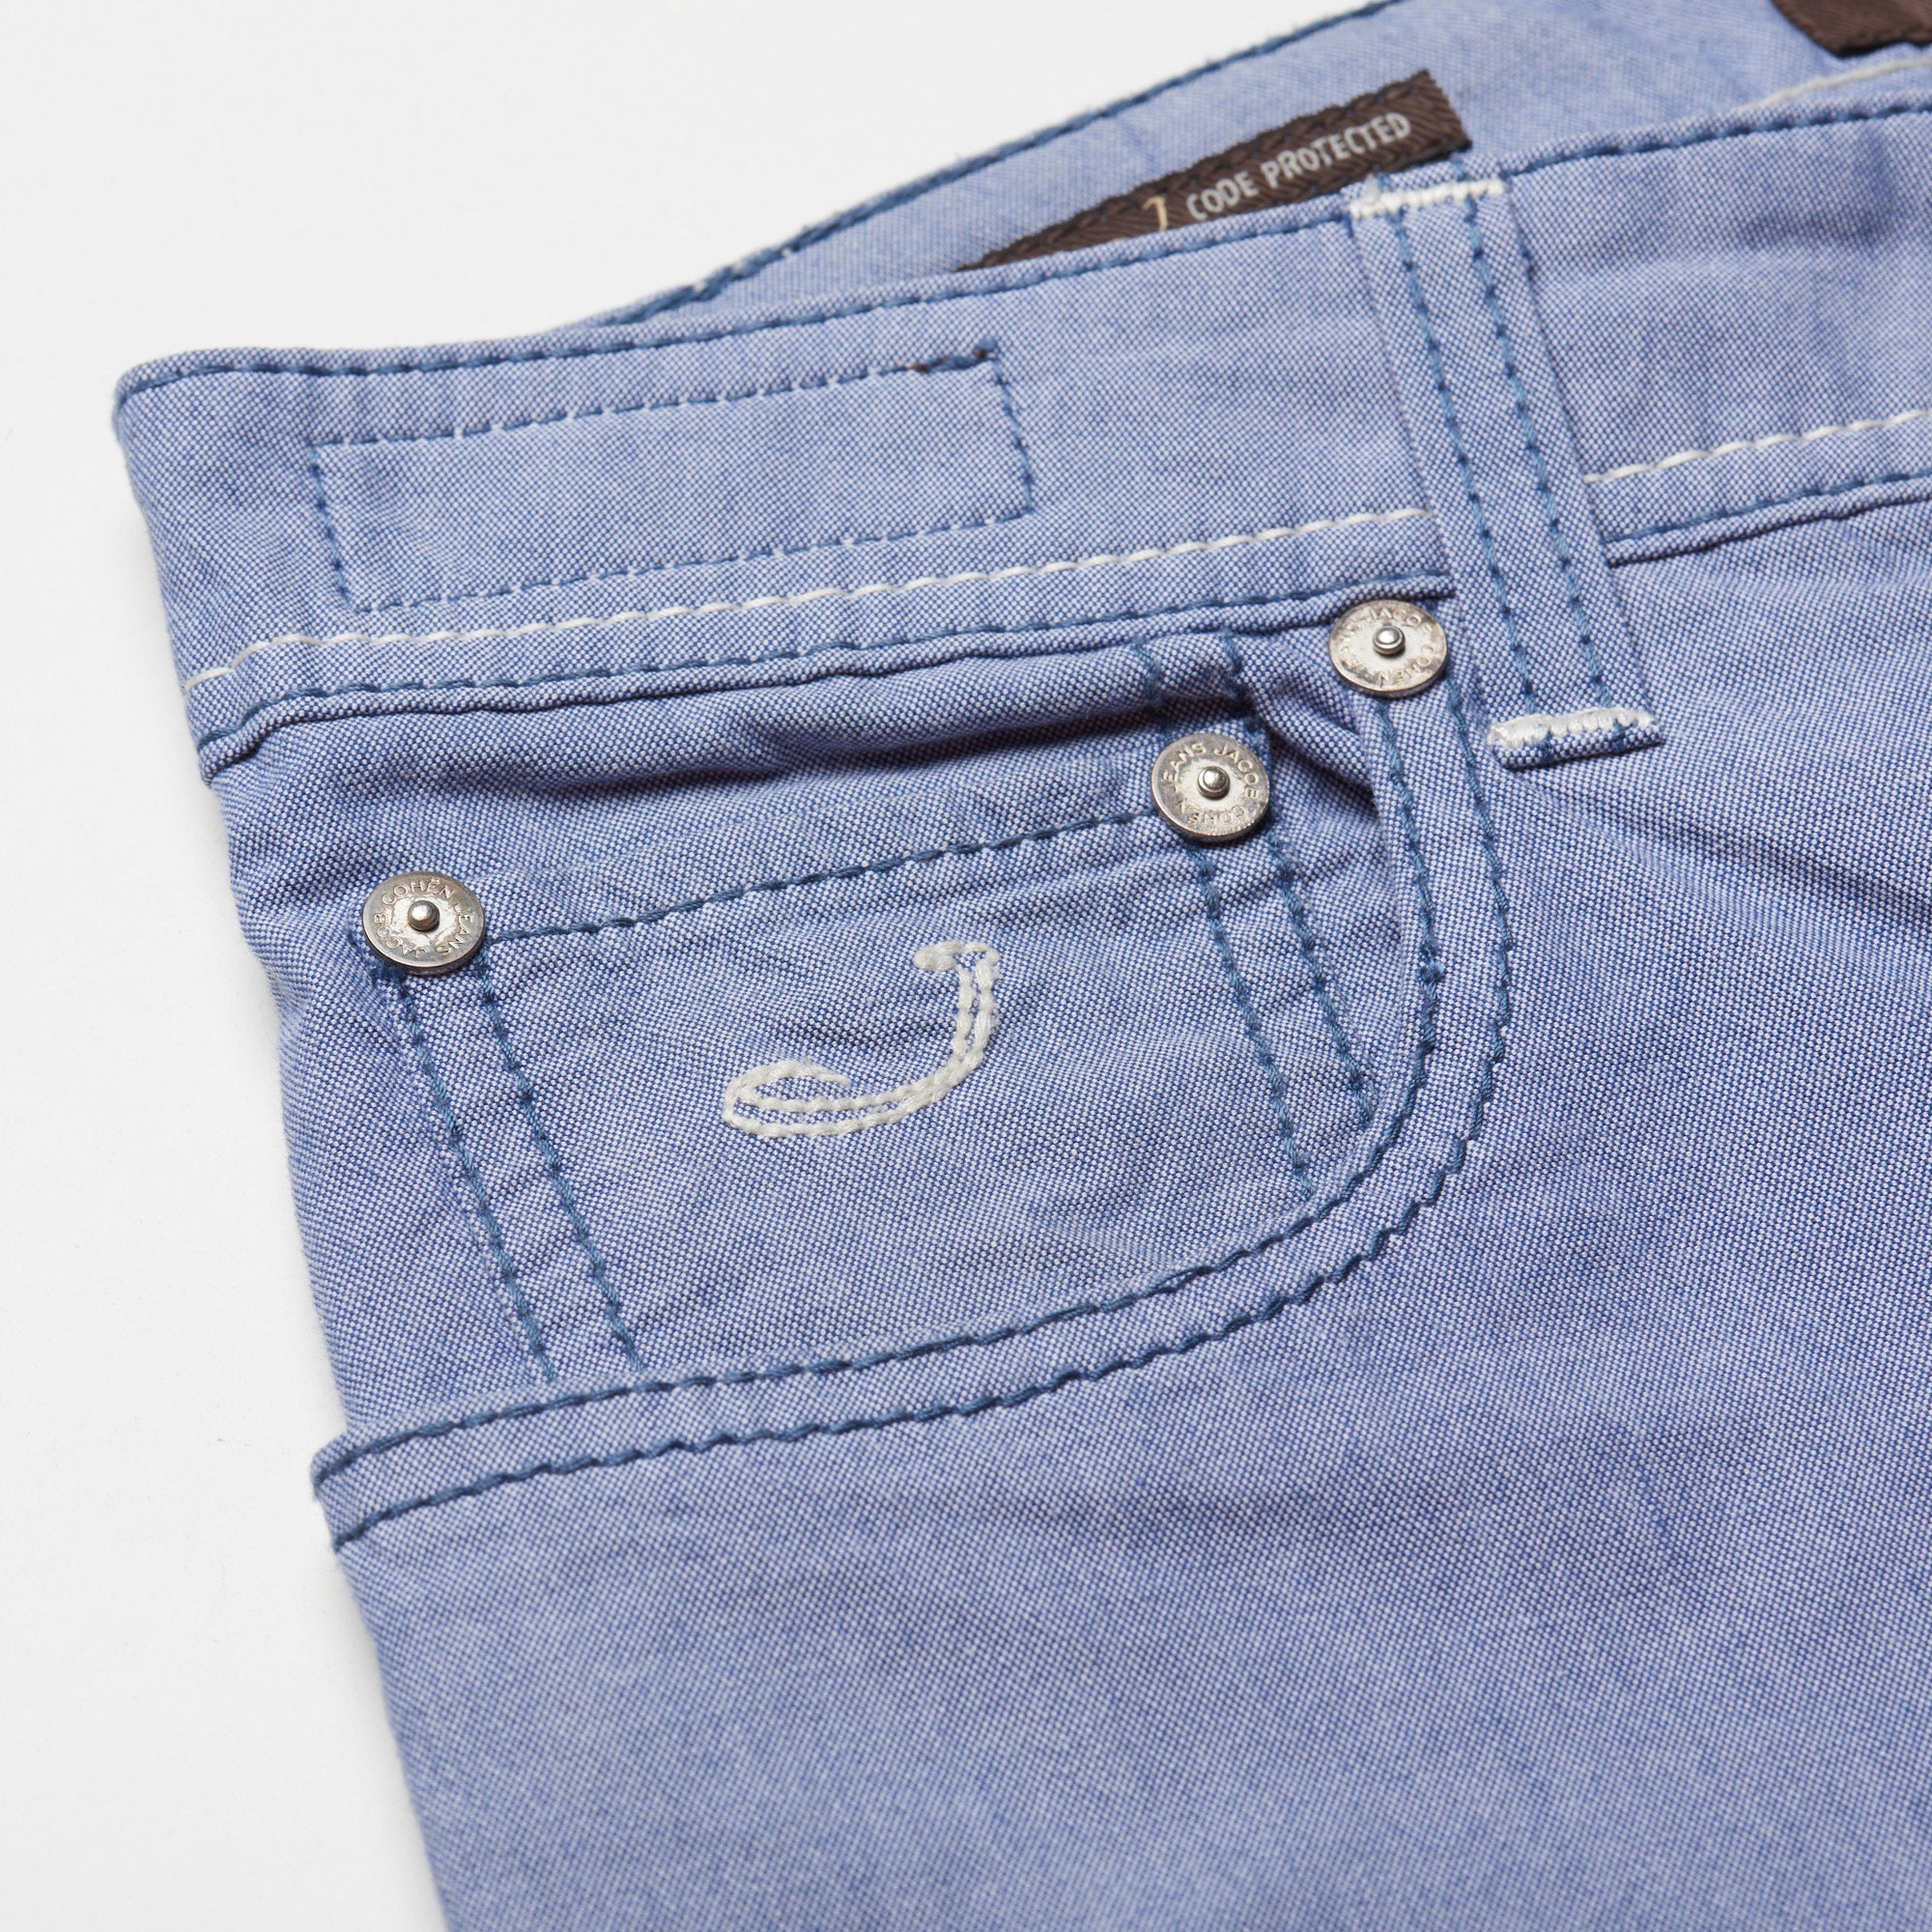 JACOB COHEN J688 Comfort Blue Cotton Stretch Slim Fit Jeans Pants US 33